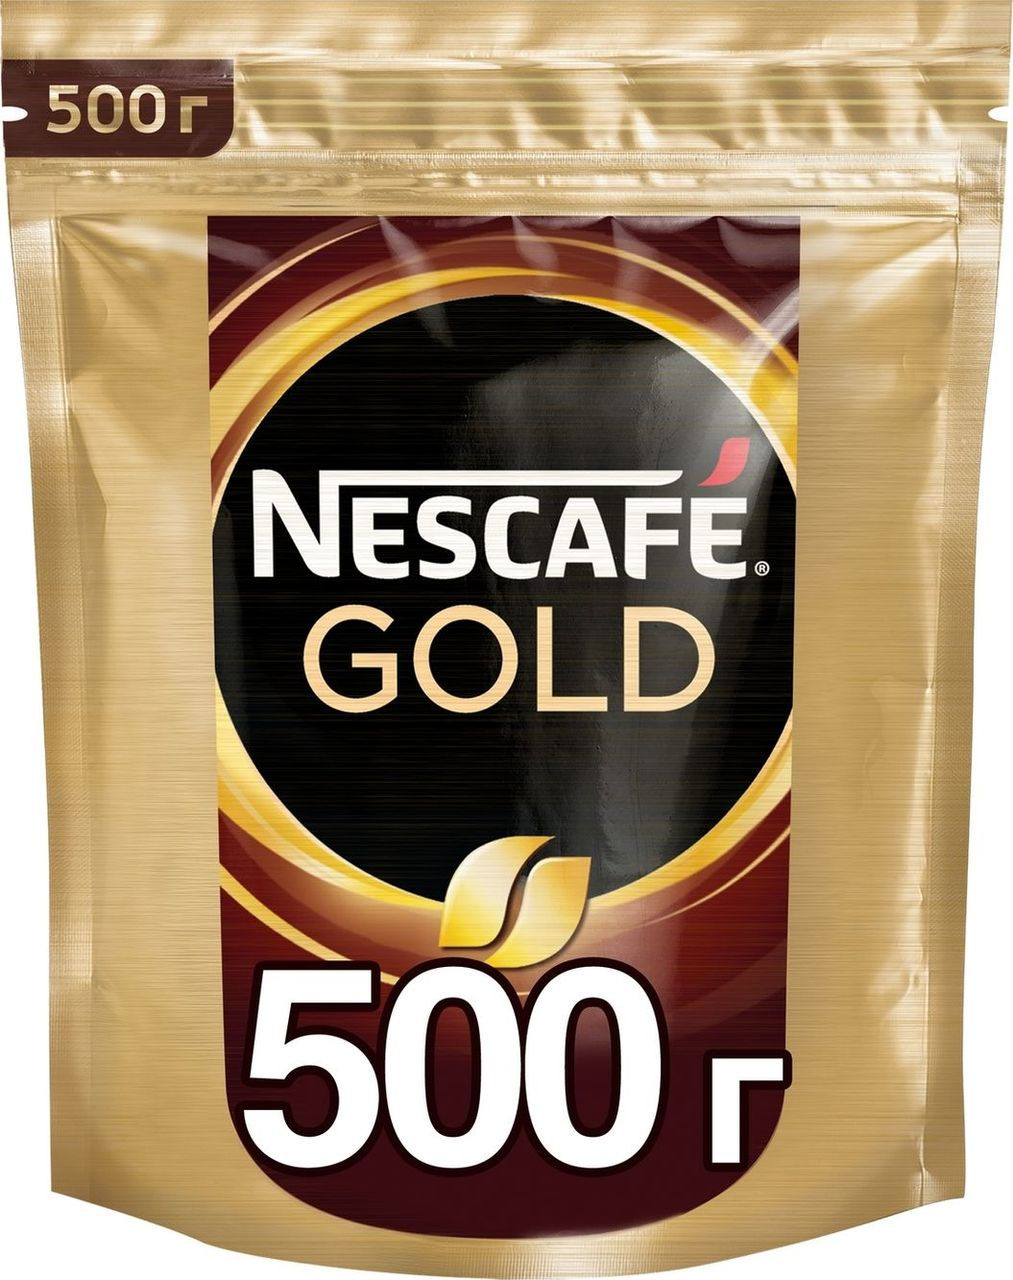 Кофе нескафе голд 500 гр. Кофе Нескафе Голд 500г м/у. Нескафе Голд в мягкой упаковке 500 грамм. Нескафе Голд 500 гр. м/у. Кофе Nescafe Gold пакет 500 гр.